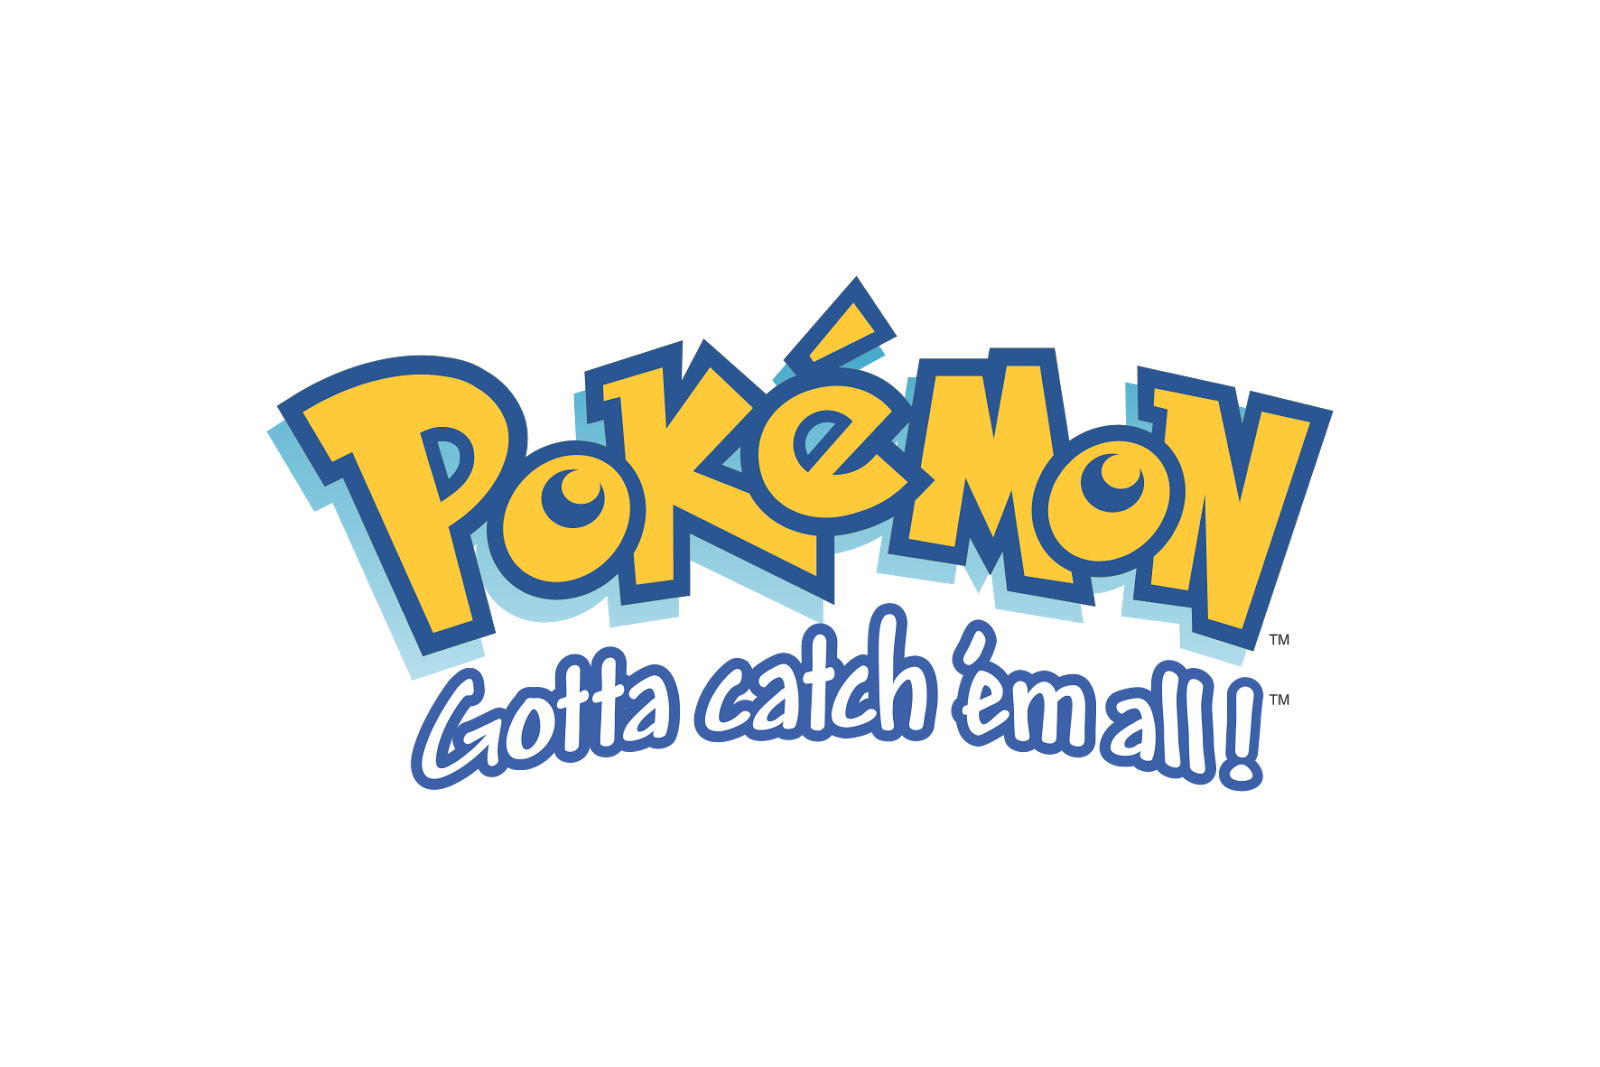 Pokeman Logo - Pokémon Logo - Gotta catch 'em all! | Pokémon Logos | Pokemon logo ...